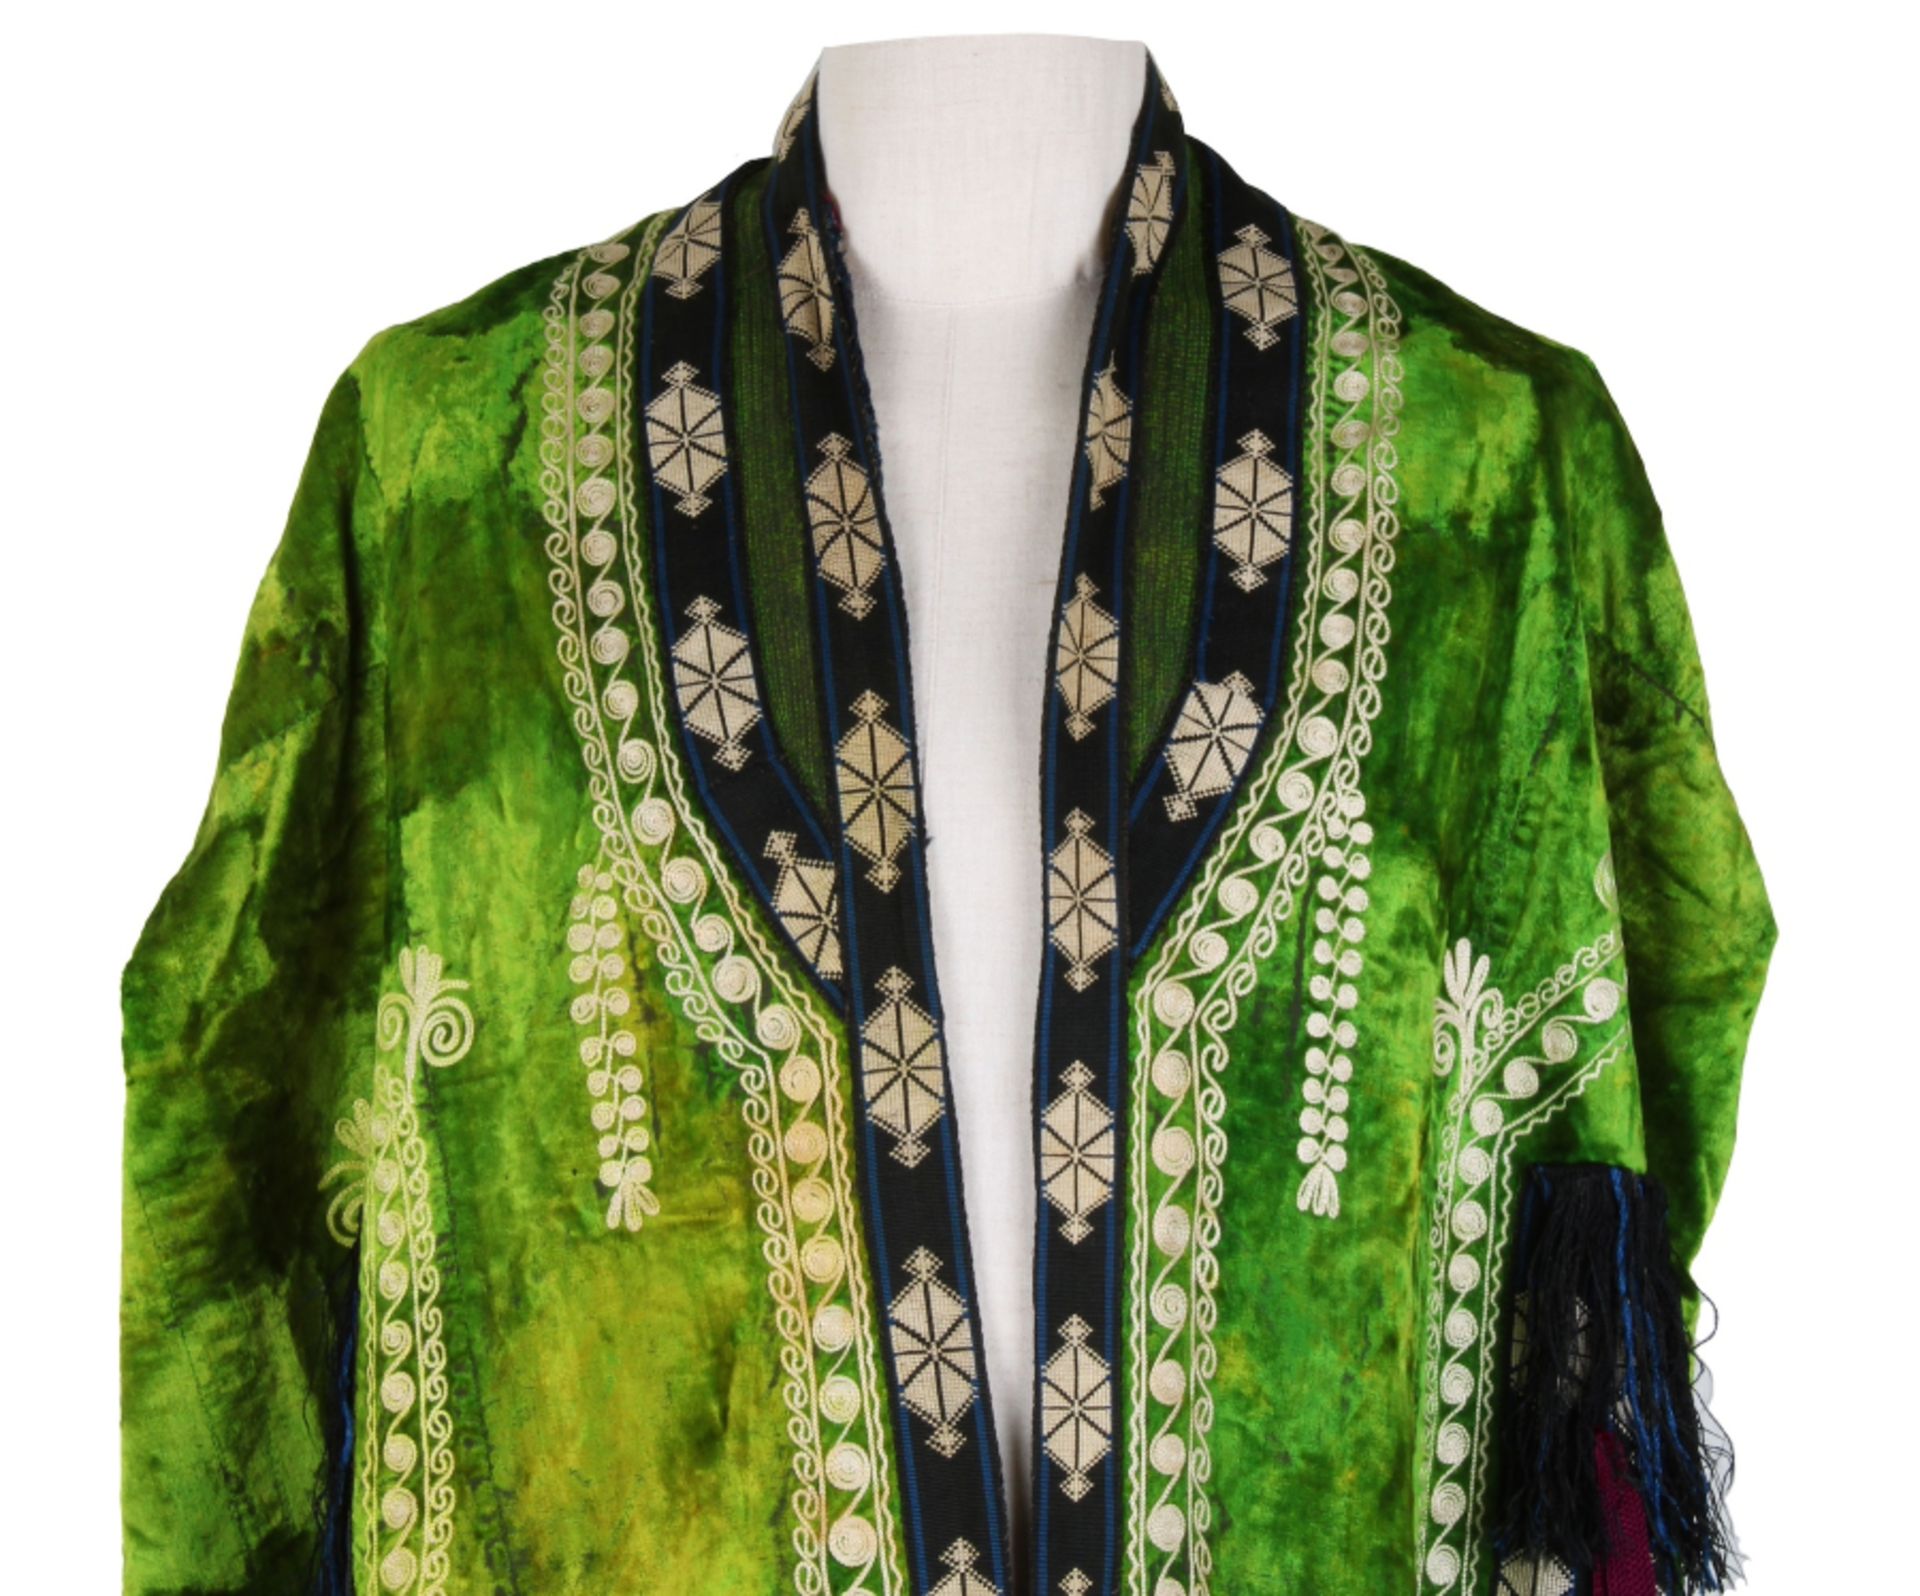 Wonderfully colourful Uzbek coat - Image 2 of 11